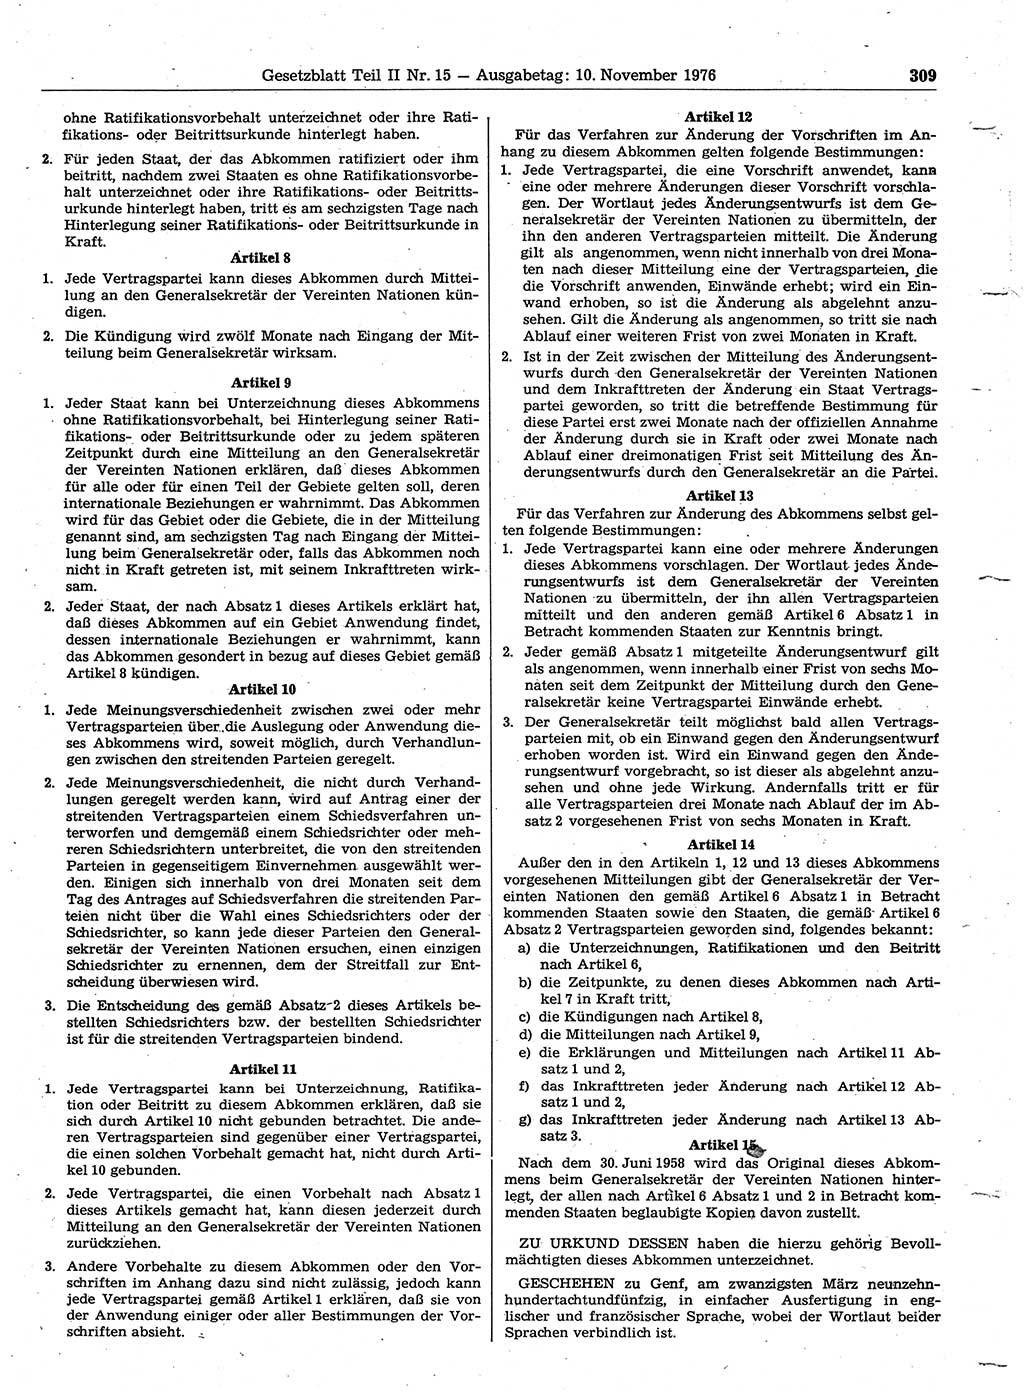 Gesetzblatt (GBl.) der Deutschen Demokratischen Republik (DDR) Teil ⅠⅠ 1976, Seite 309 (GBl. DDR ⅠⅠ 1976, S. 309)